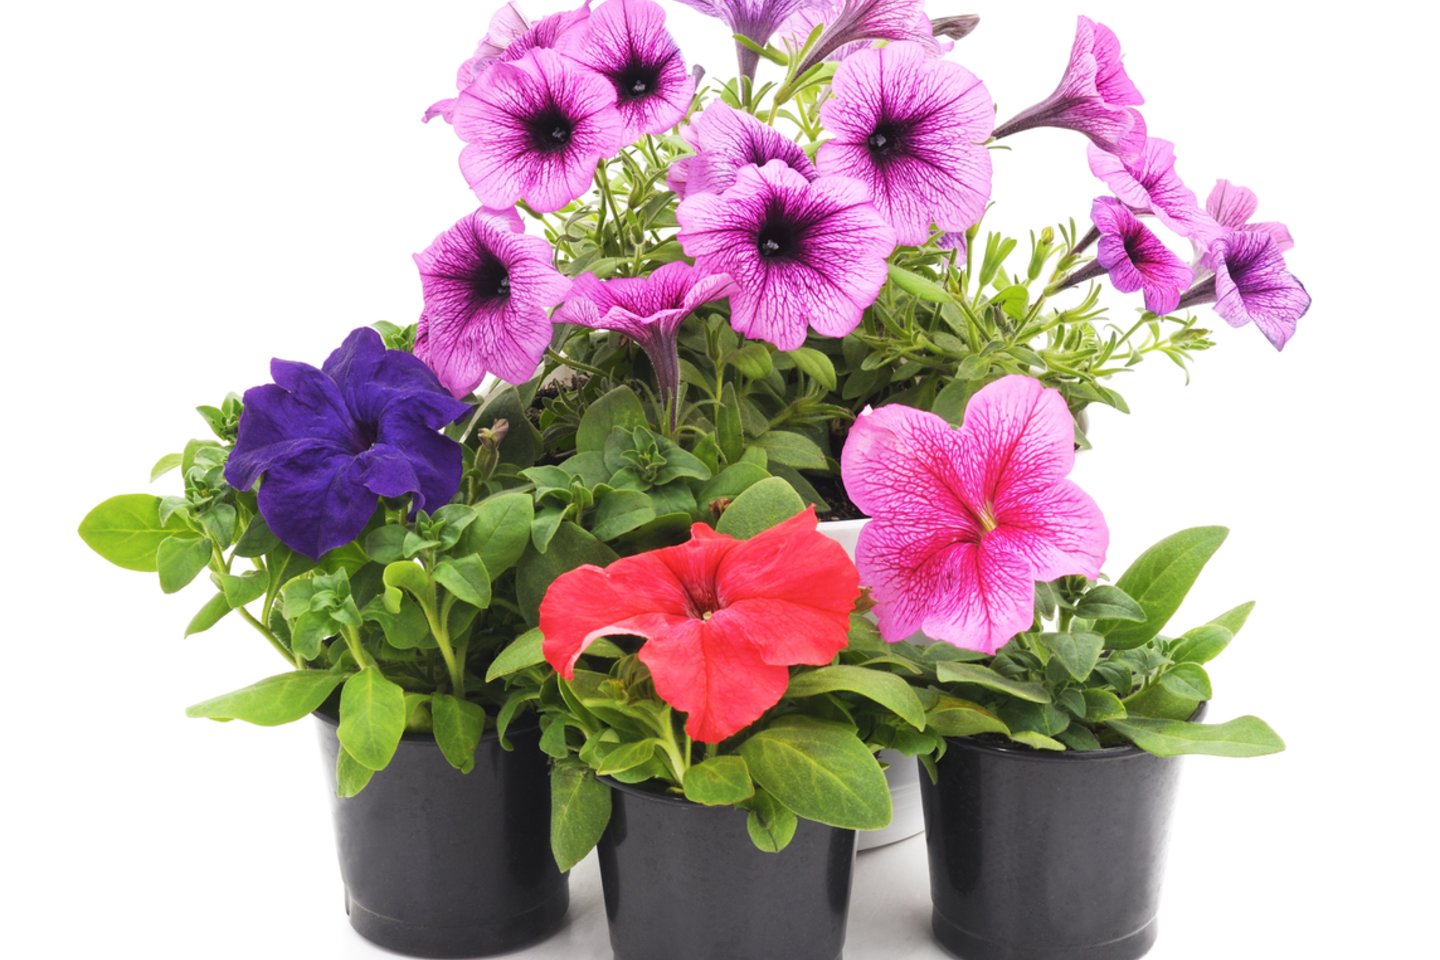  Svyrančios gėlės yra puiki sodybos ar balkono puošimo alternatyva.<br> 123rf.com asociatyvioji nuotr.